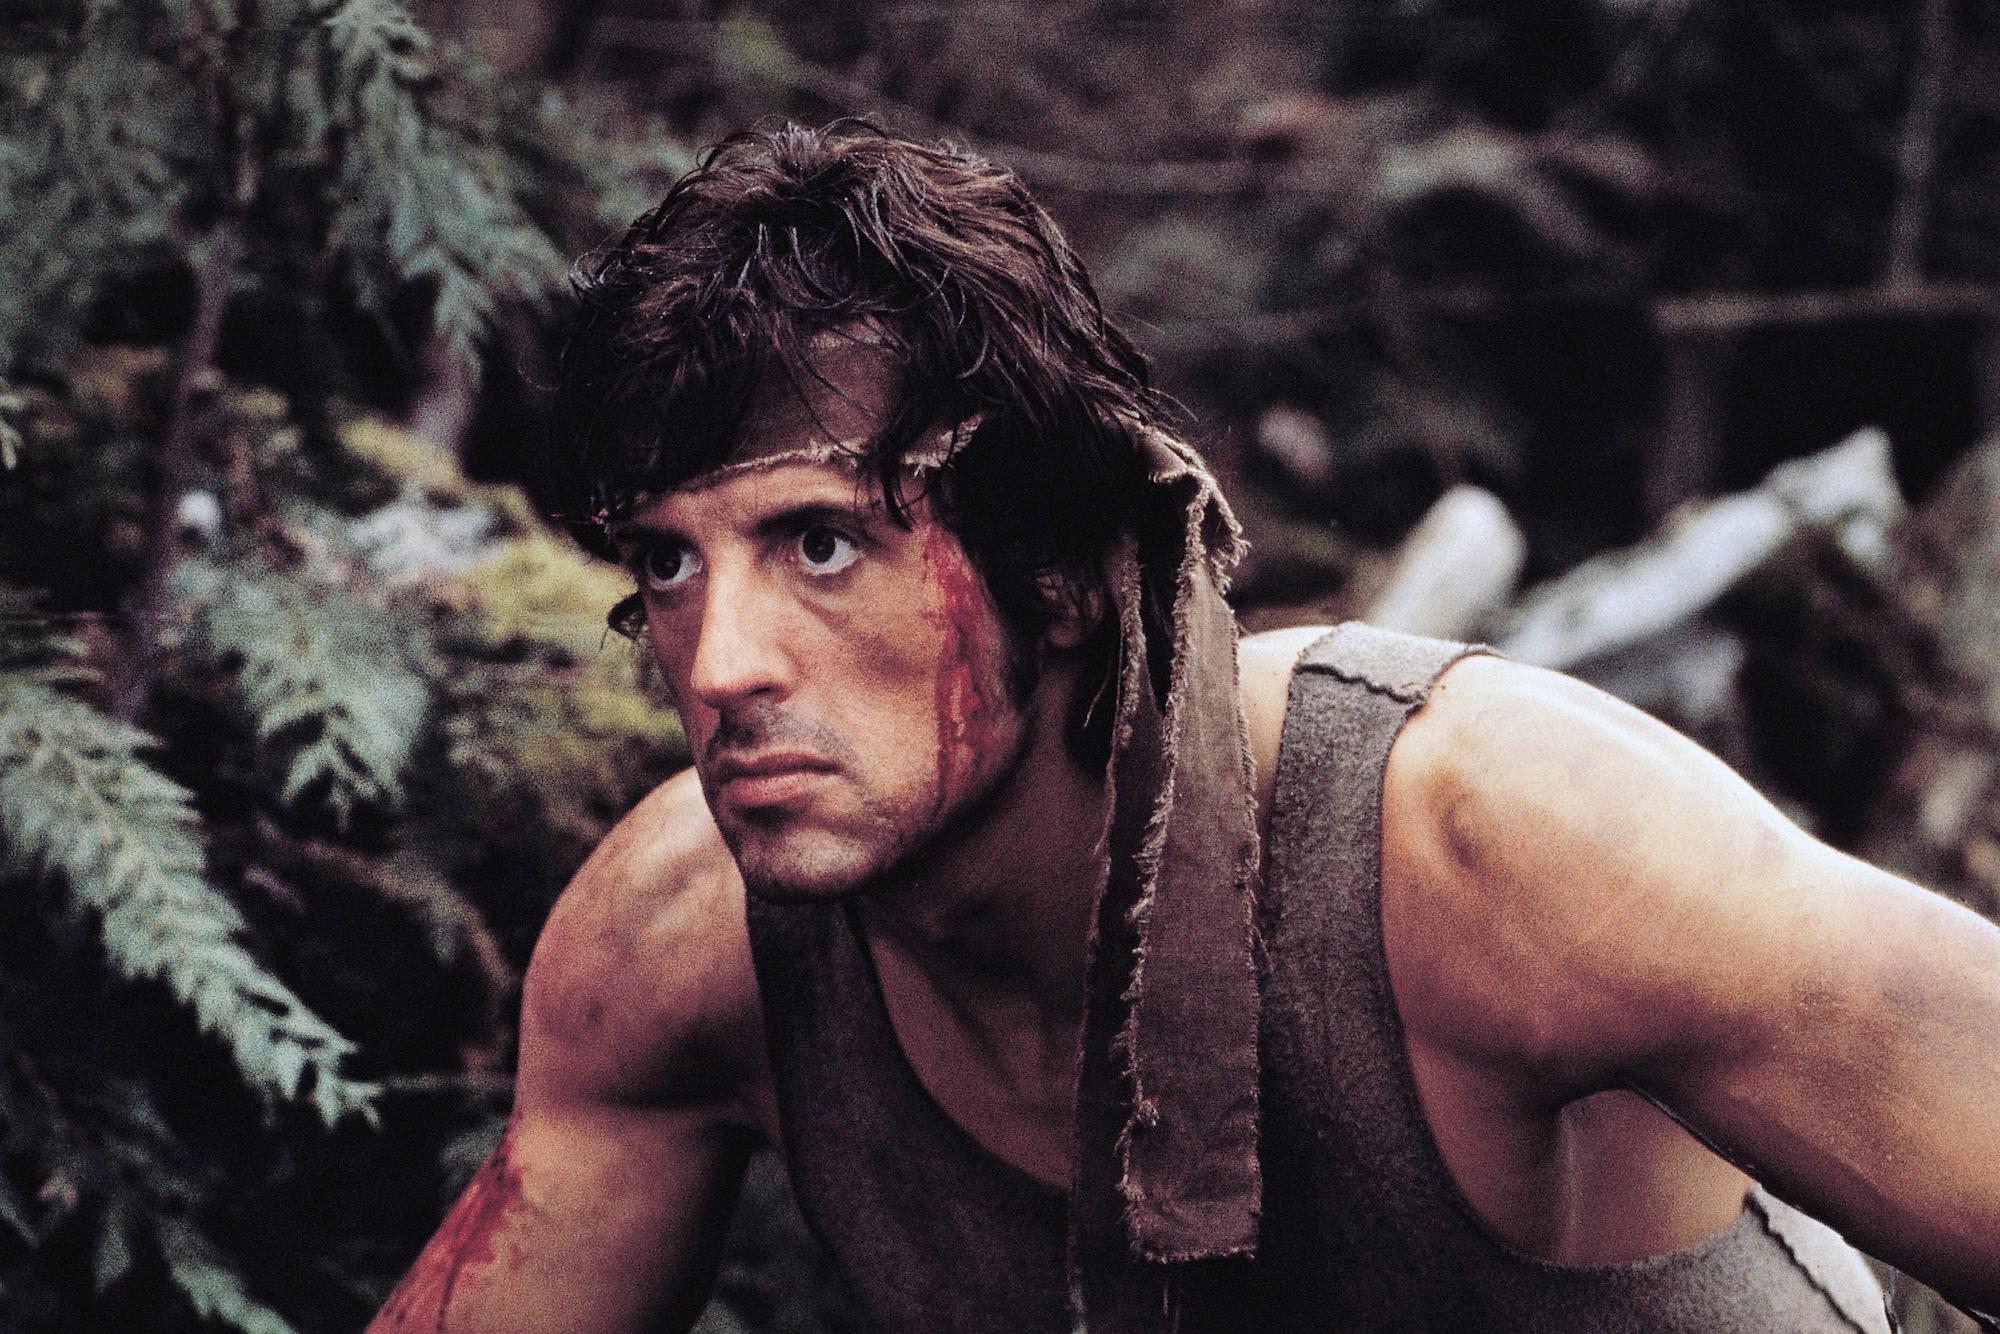 Rambo first blood